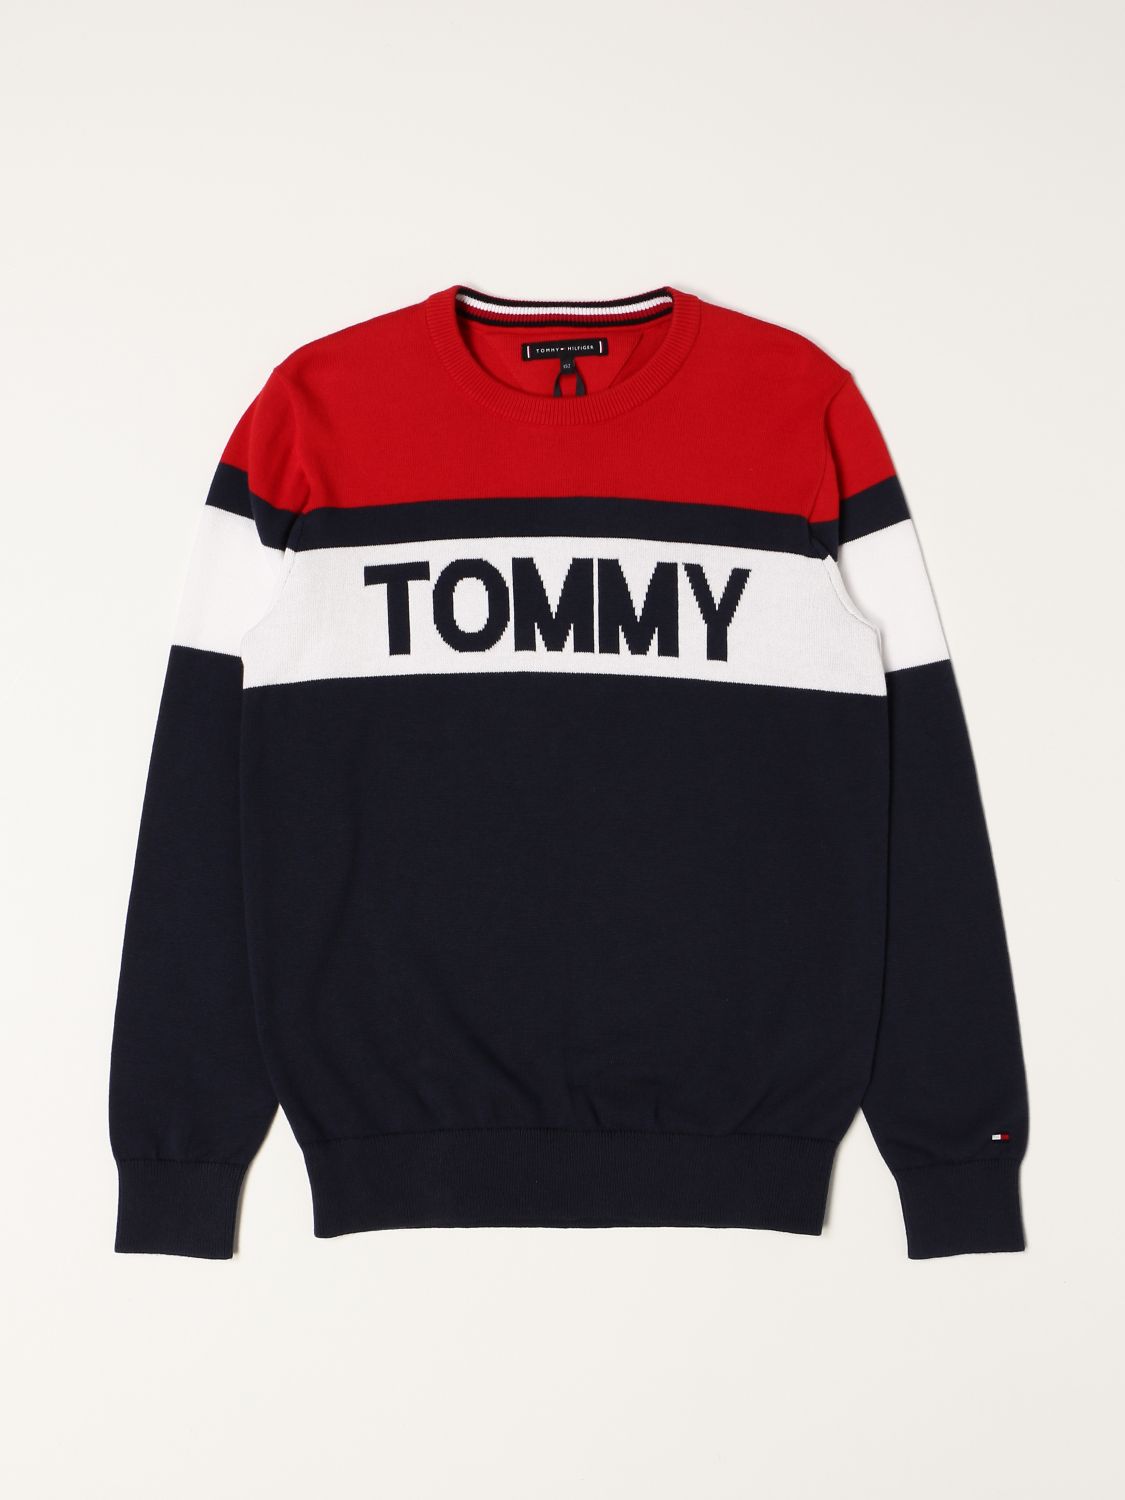 TOMMY HILFIGER: for boys - Navy | Tommy Hilfiger sweater KB0KB06510 online GIGLIO.COM